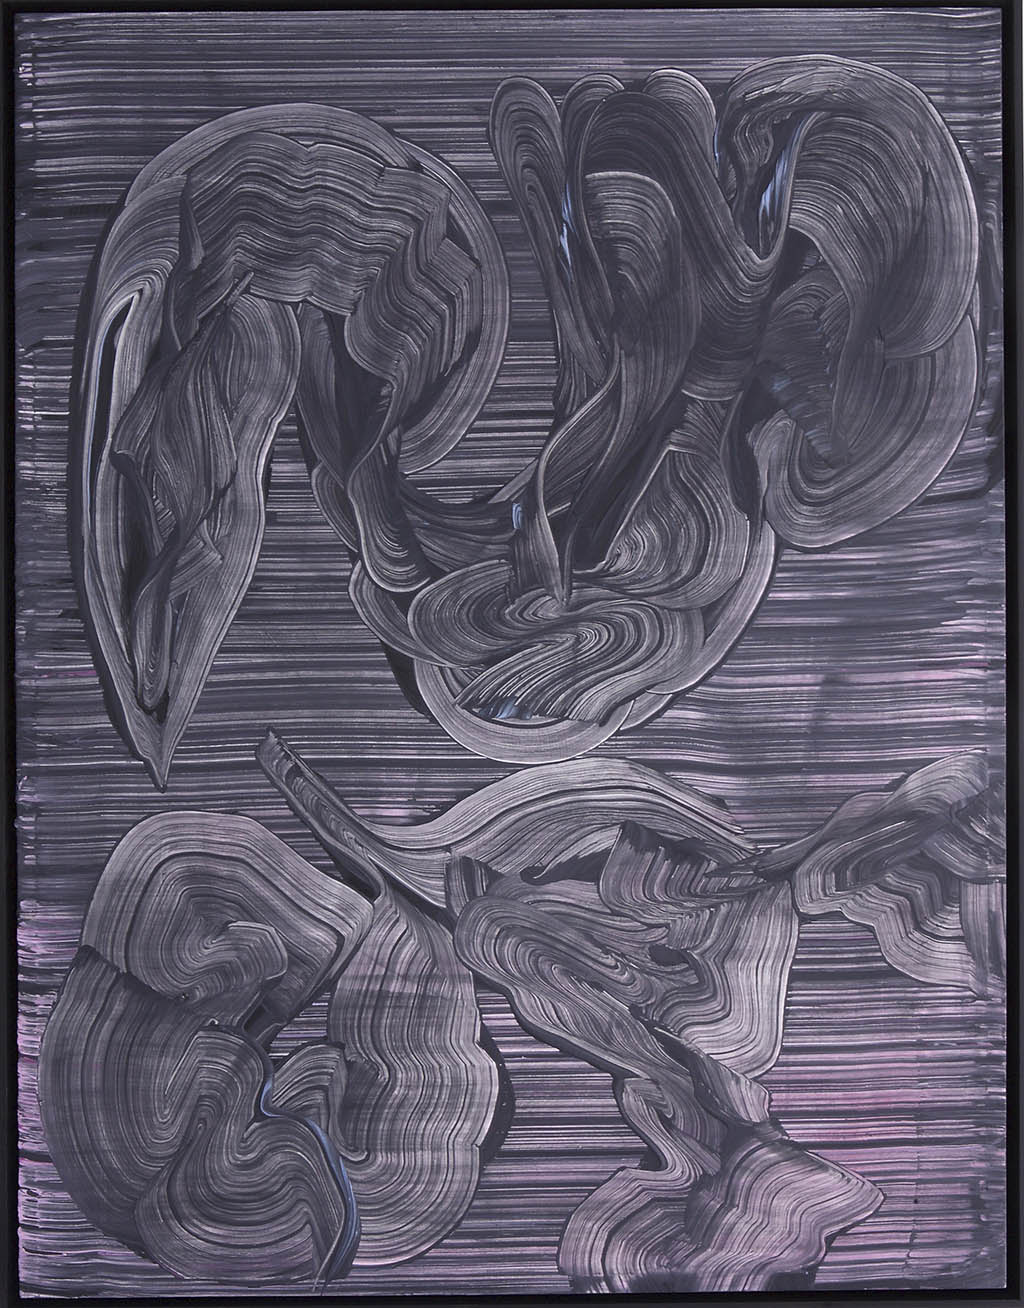 Fabrizio Gazzarri, Alien, 2018 - Pittura acrilica su tela, 140 x 100 cm